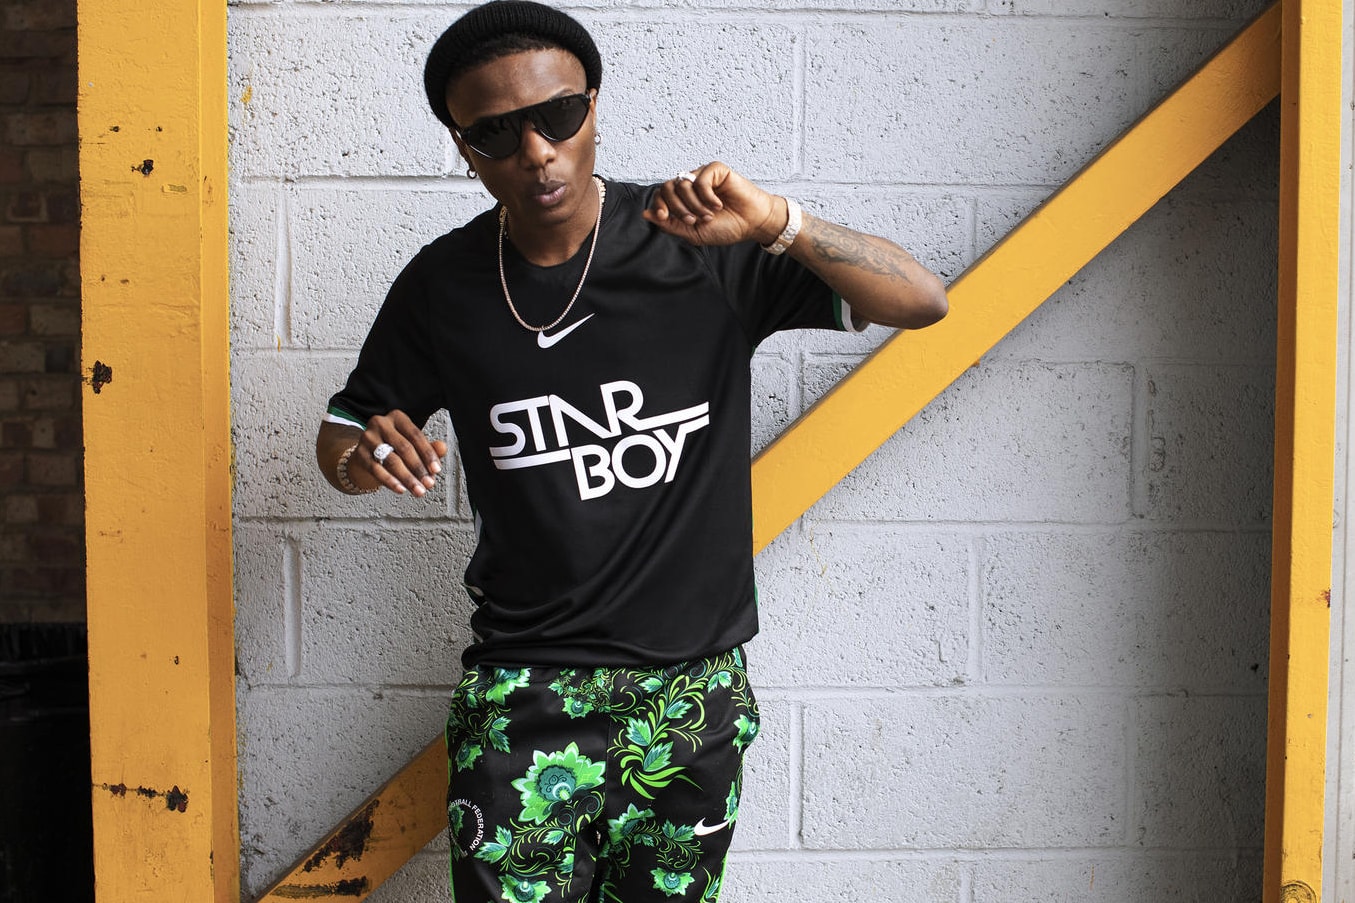 Wizkid Nike Starboy Jersey Nigeria Naija Starboy Entertainment Release Information First Look Details News